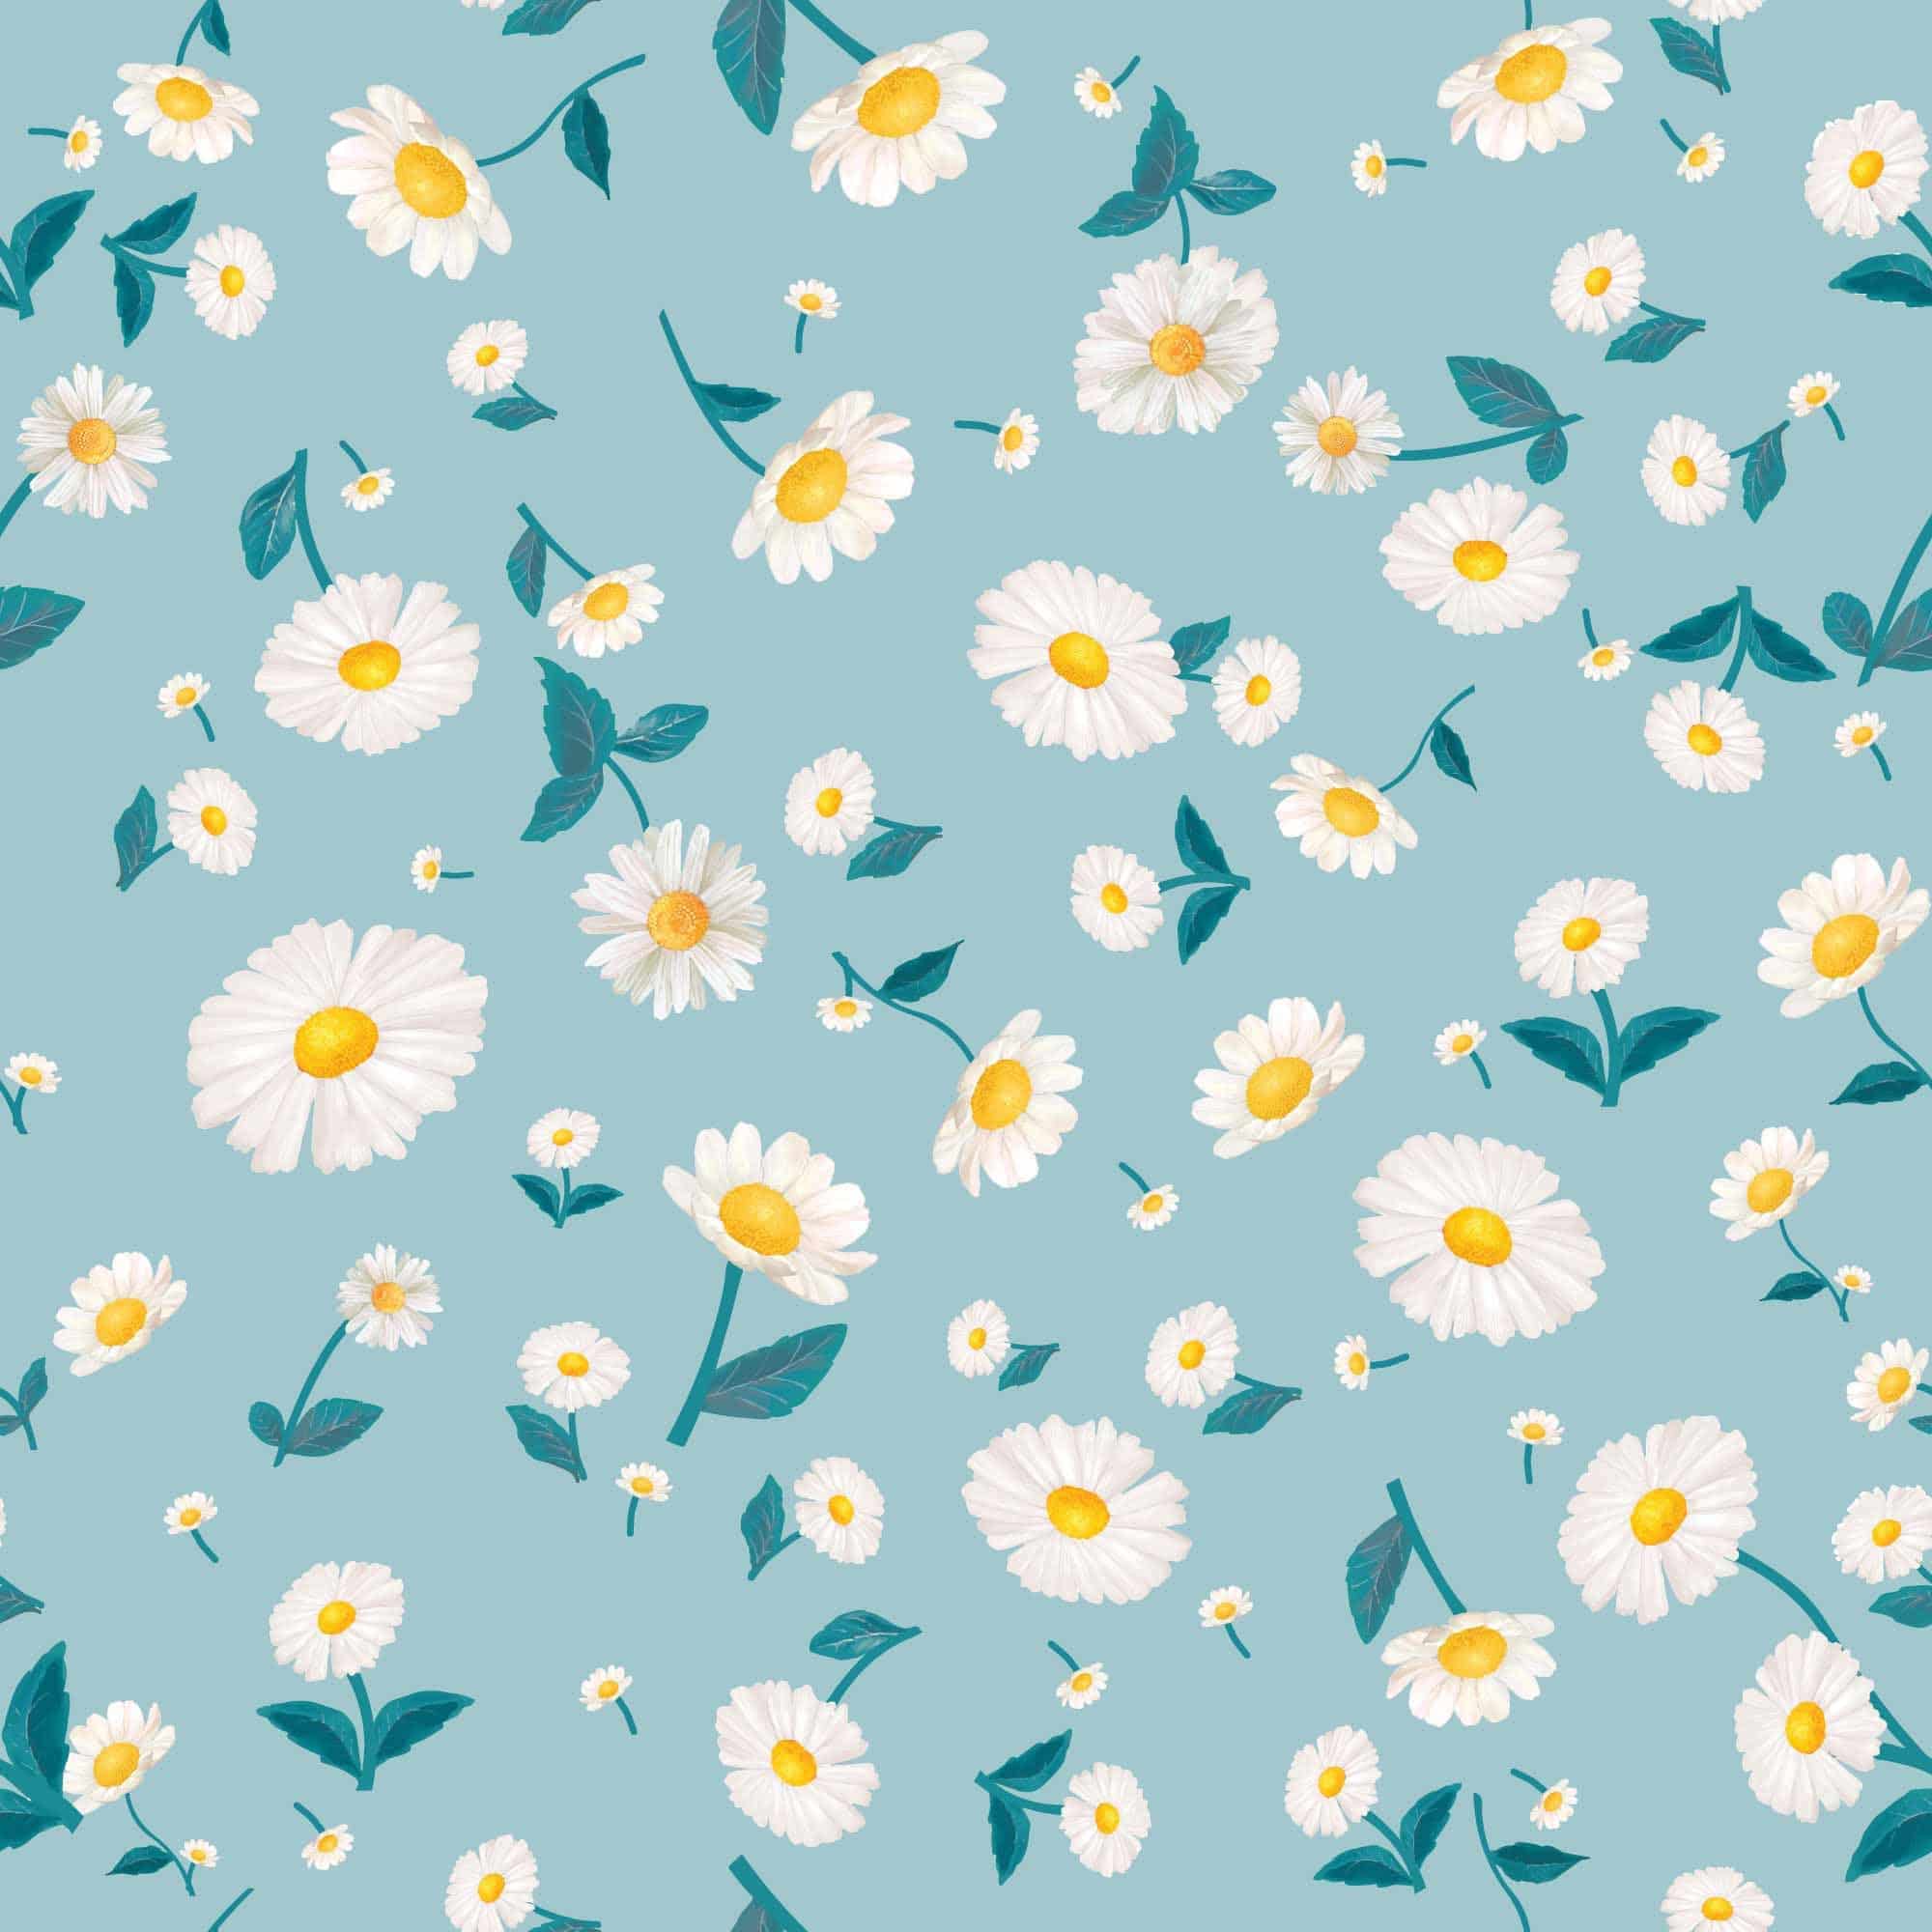 Flower background desktop wallpaper cute  Premium Vector  rawpixel